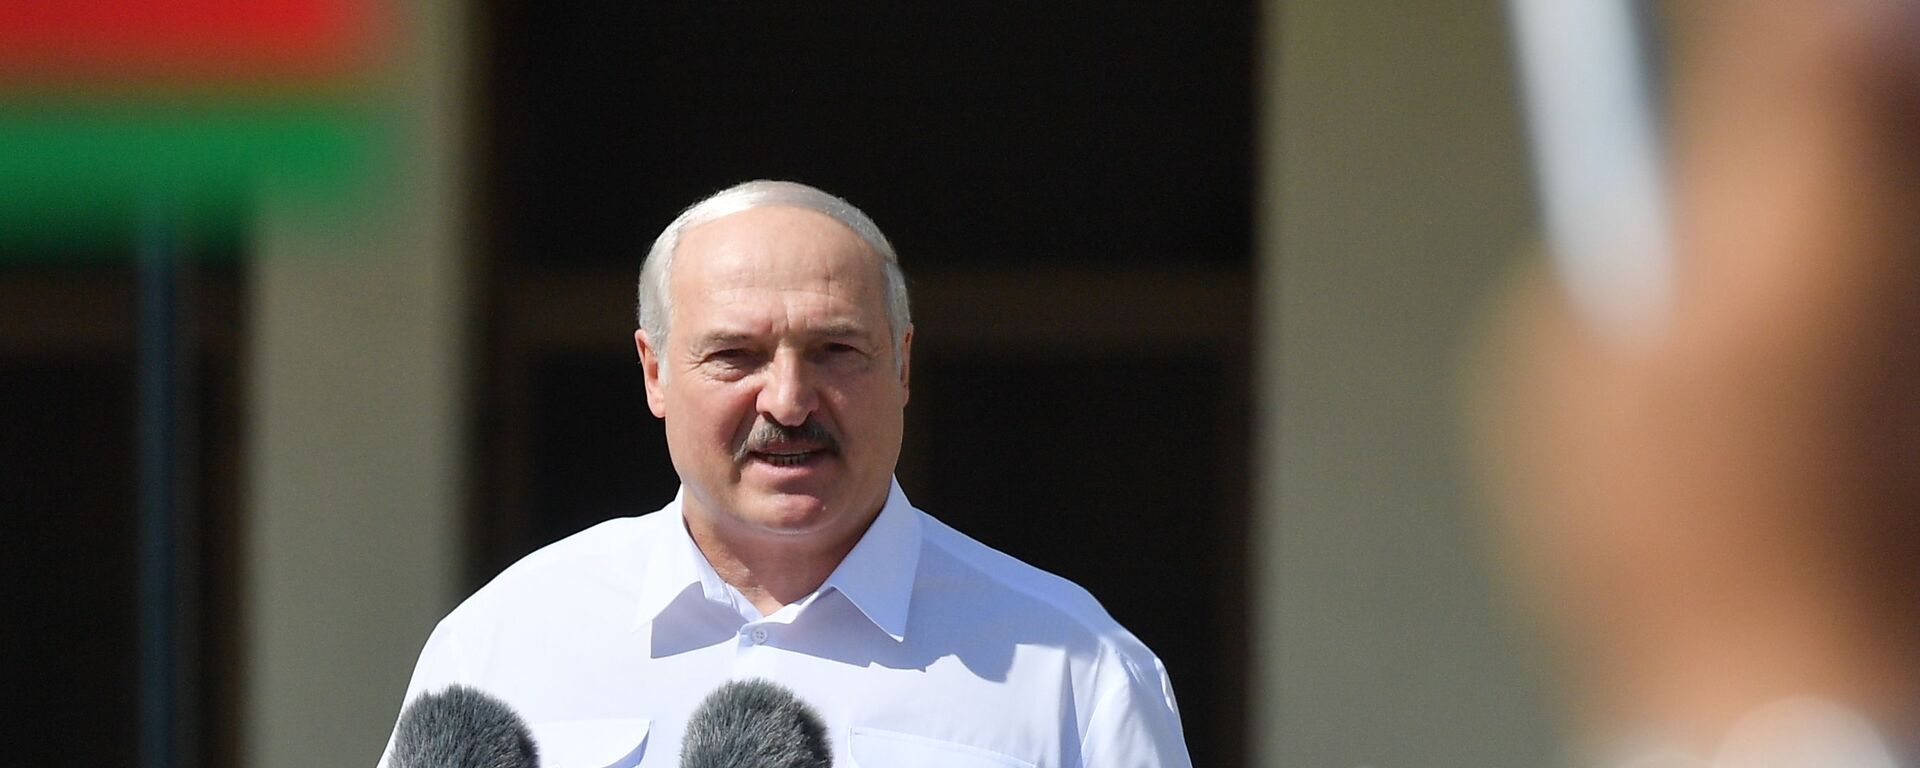 Alexandr Lukashenko. presidente de Bielorrusia - Sputnik Mundo, 1920, 13.07.2021